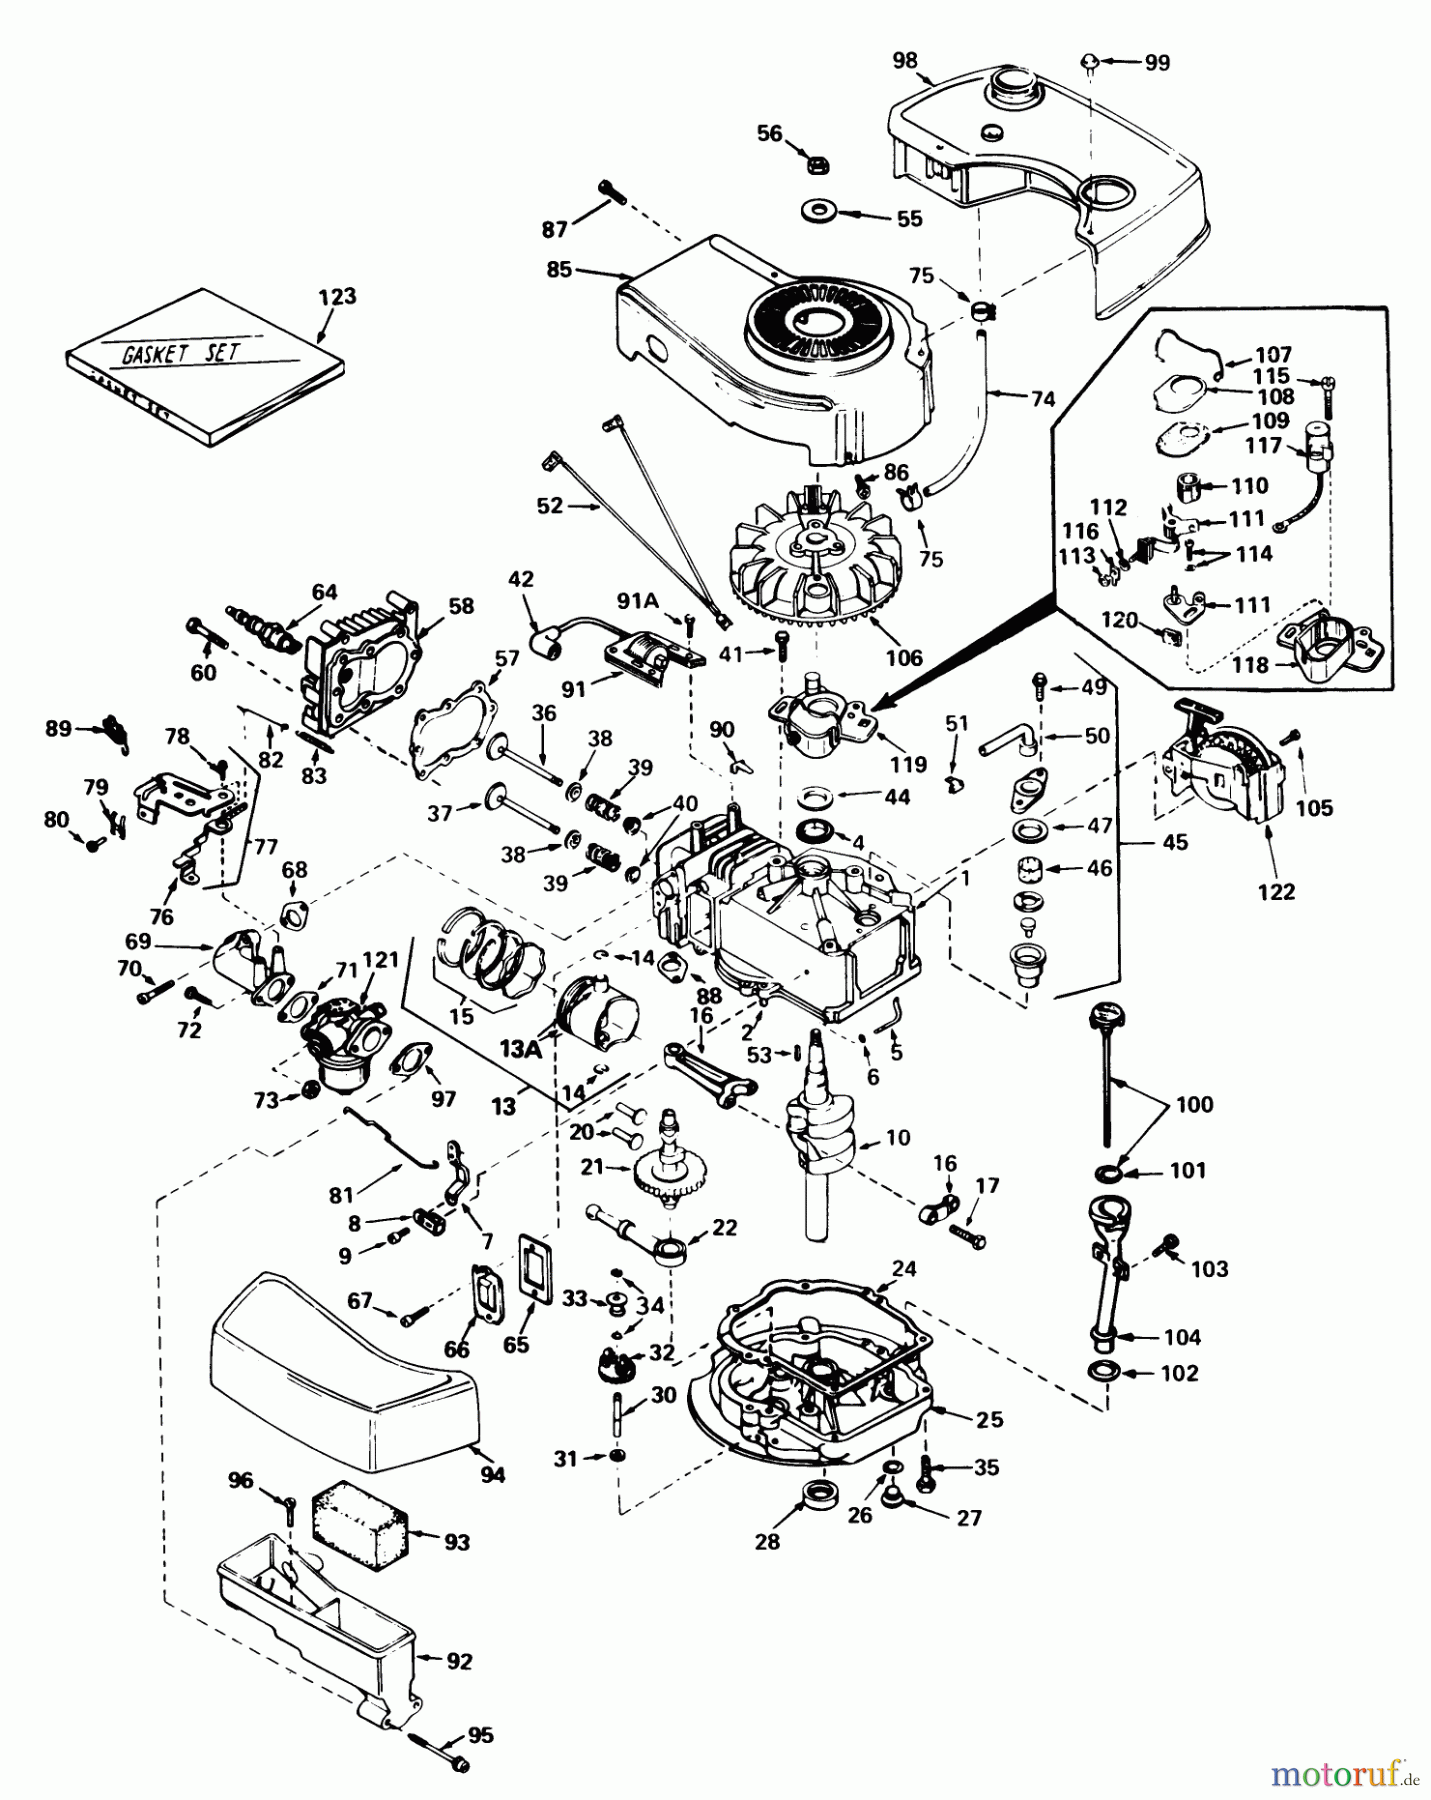  Toro Neu Mowers, Walk-Behind Seite 1 18015 - Toro Lawnmower, 1980 (0000001-0999999) ENGINE TECUMSEH MODEL NO. TNT-100-10070C